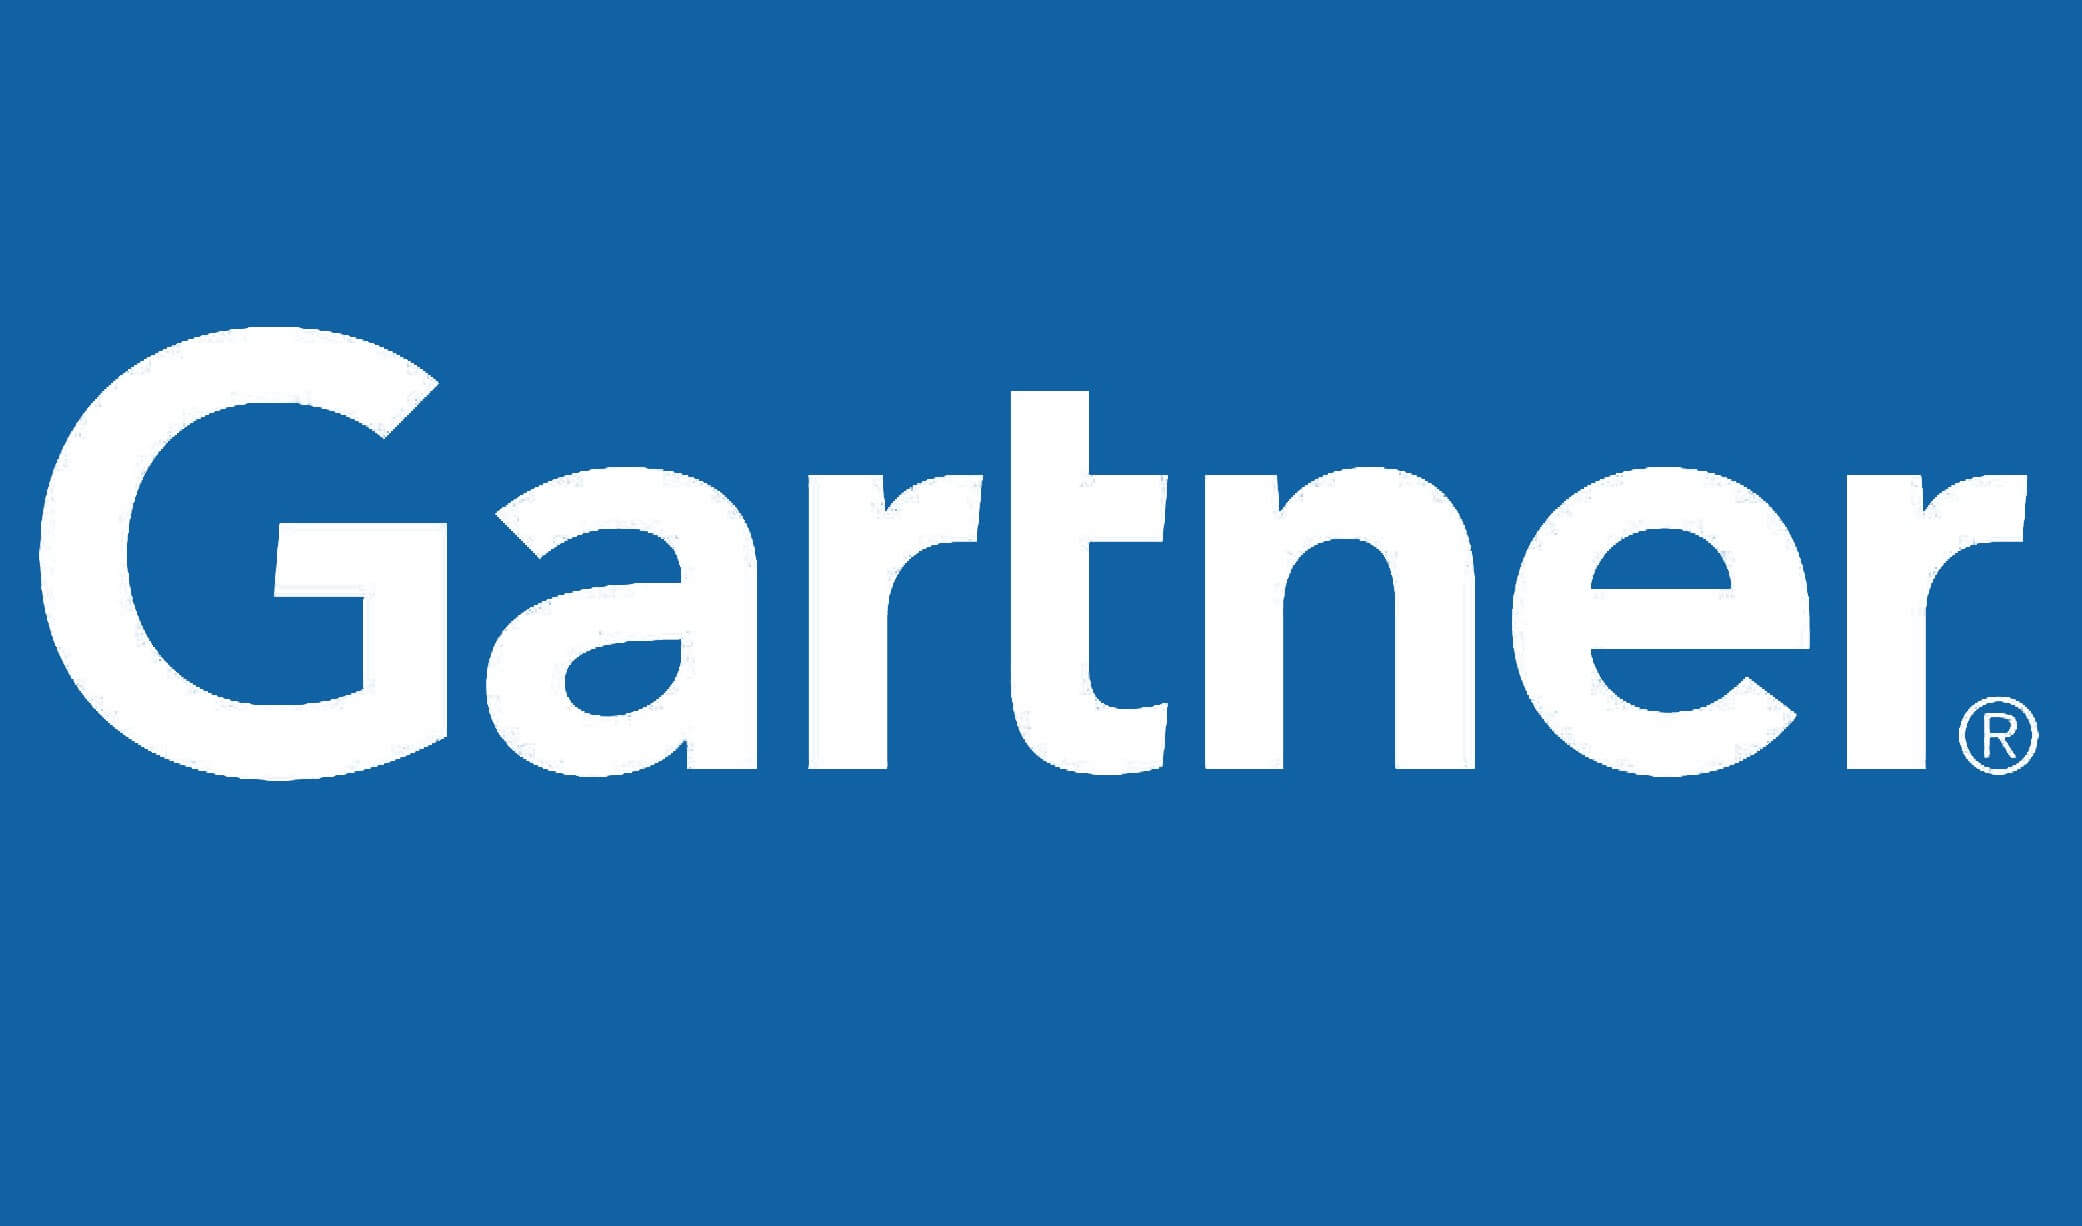 Gartner Logo 16:9 hires PNG : Inspirage